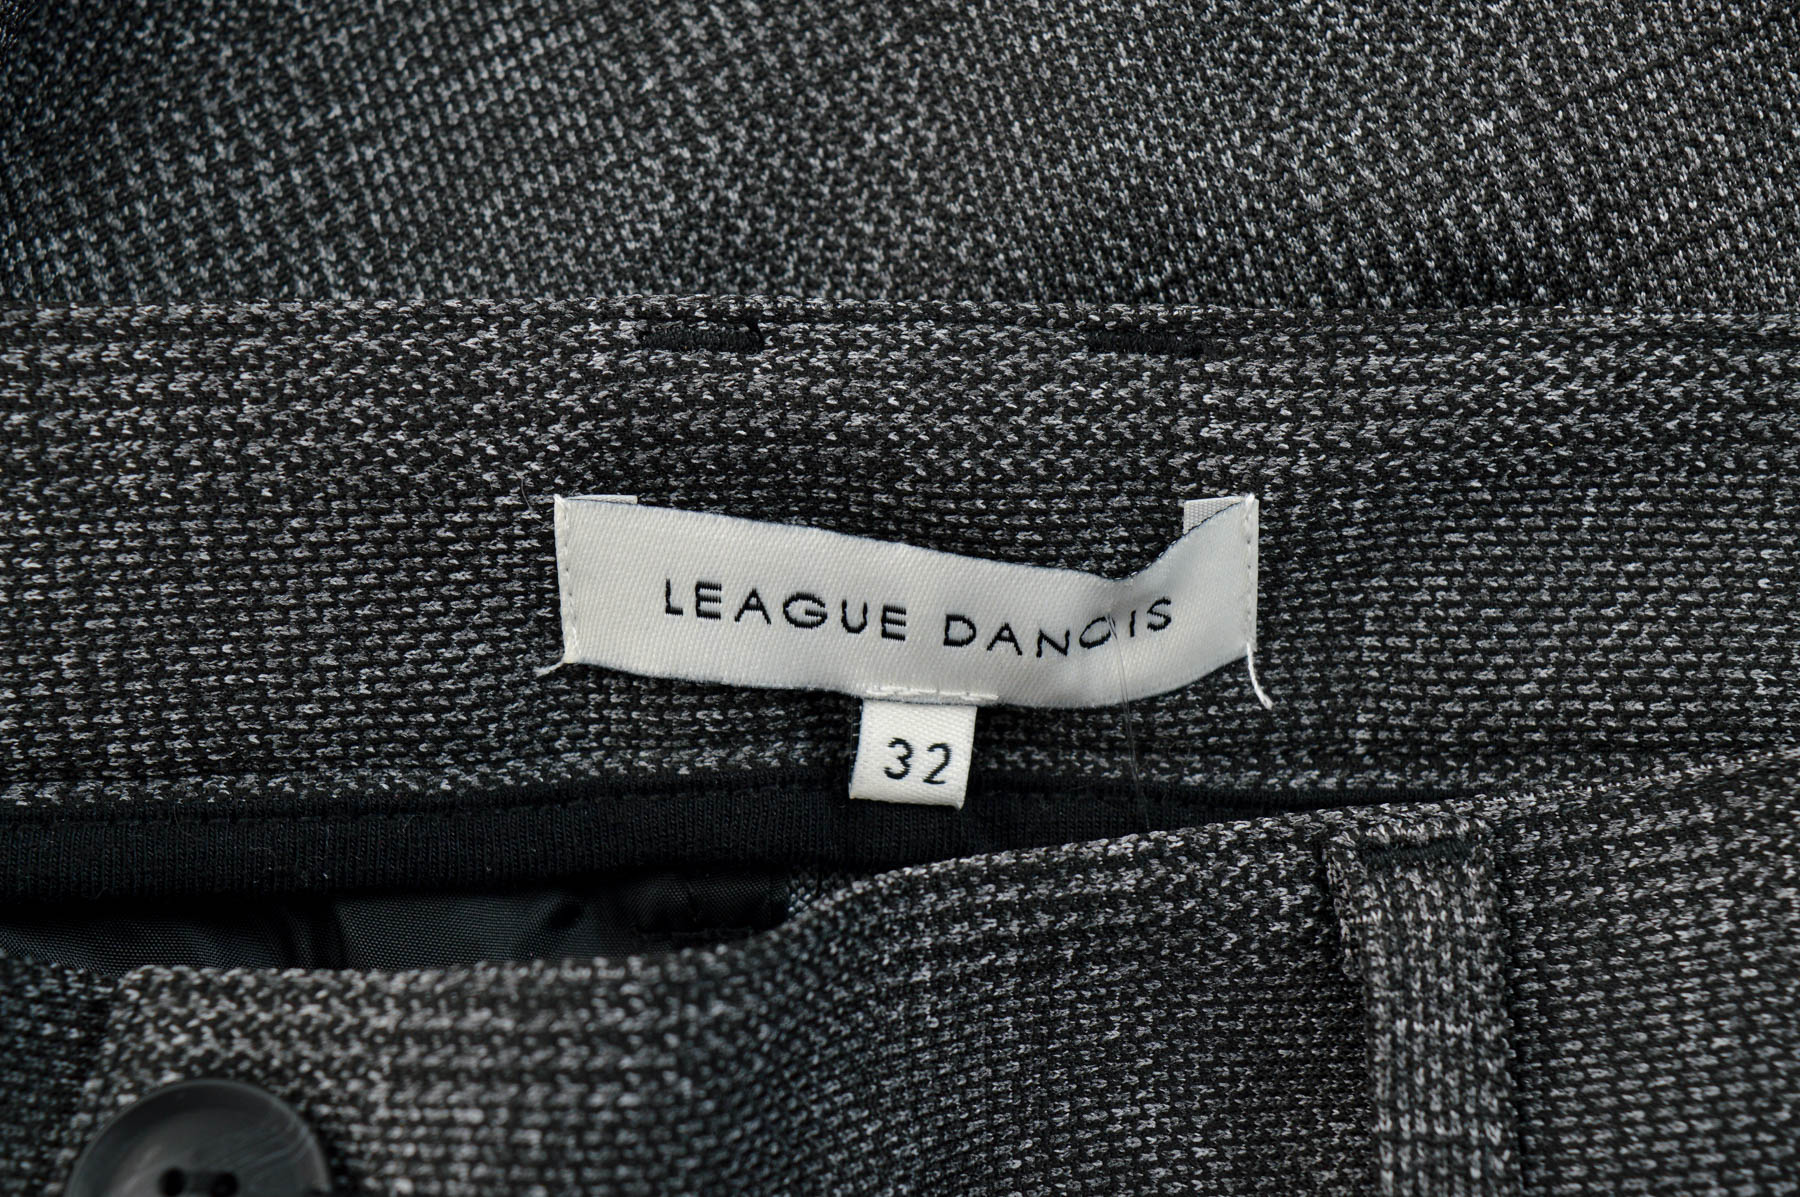 Men's trousers - League Danois - 2